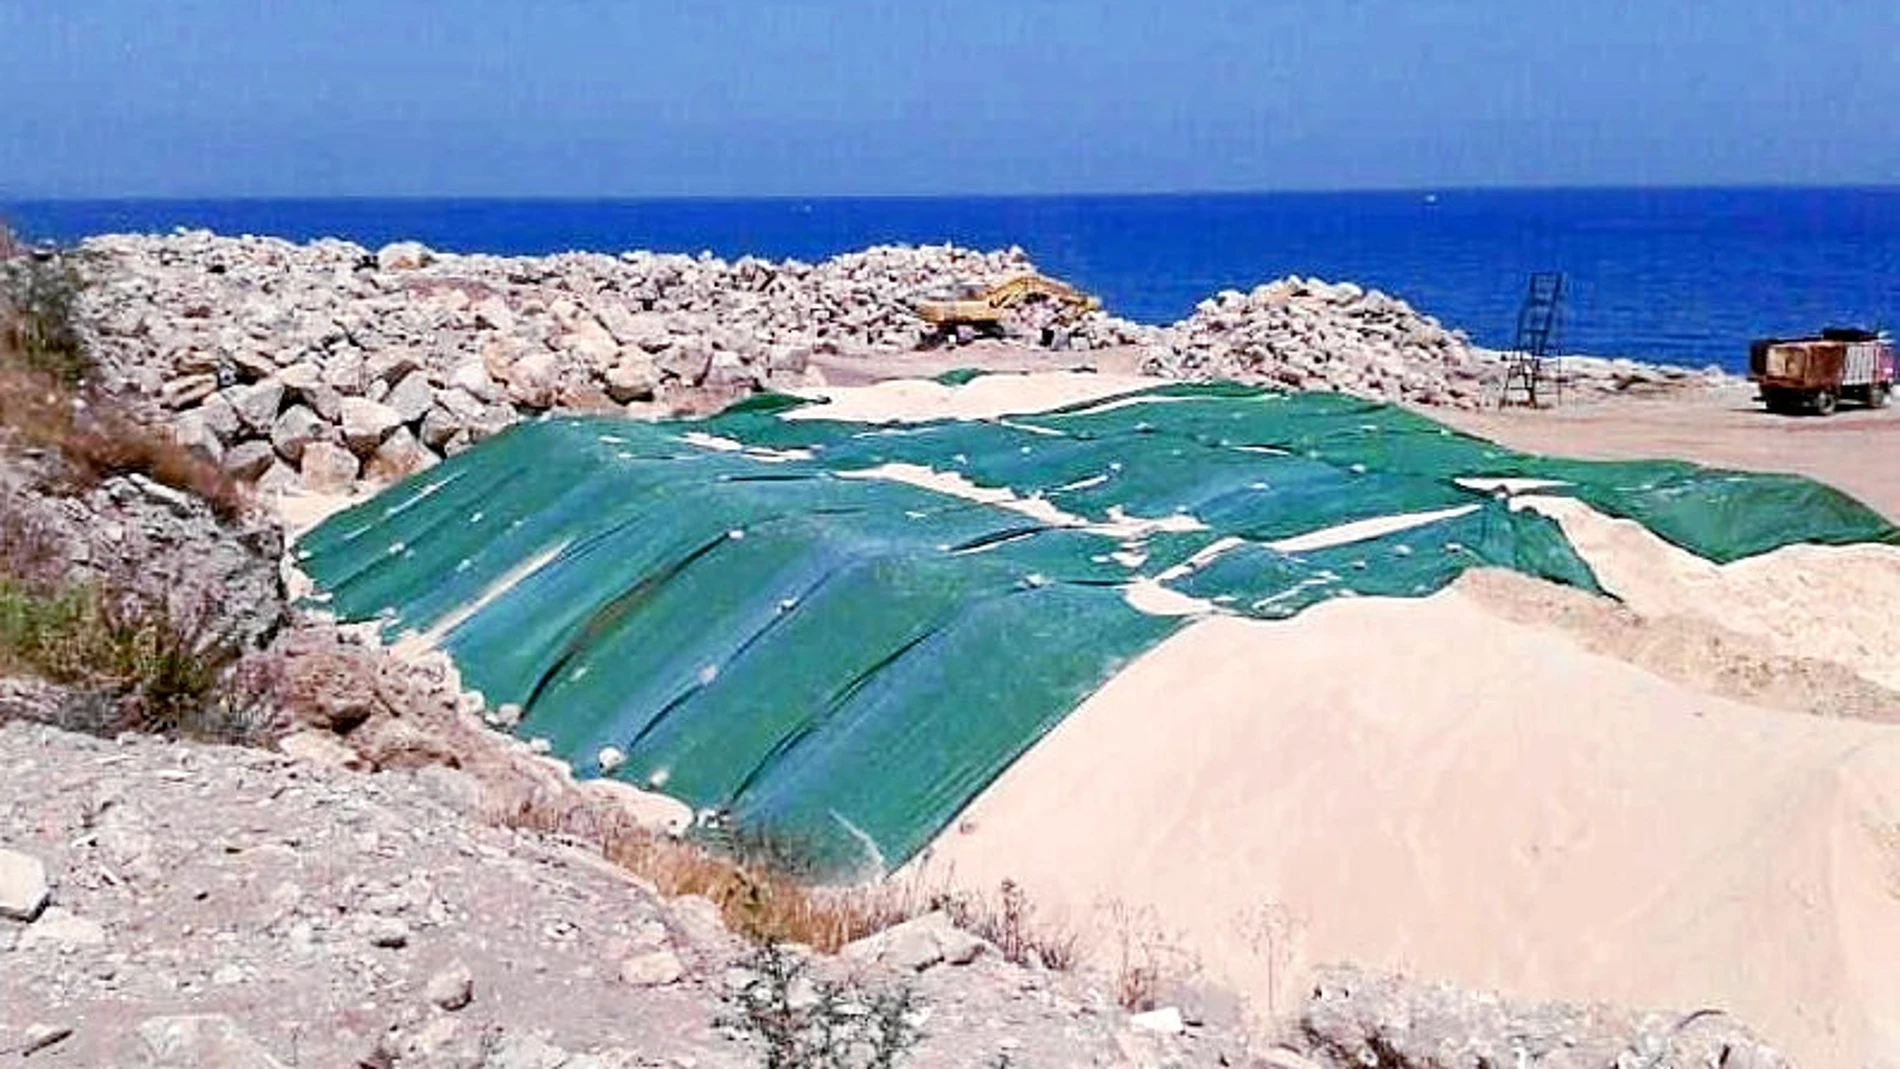 Los materiales usados por Gibraltar para ganar terreno al mar en la zona este de la Roca proceden en su mayoría de España. Gran parte de la arena empleada ha sido extraída de la playa de Valdevaqueros (izda.)